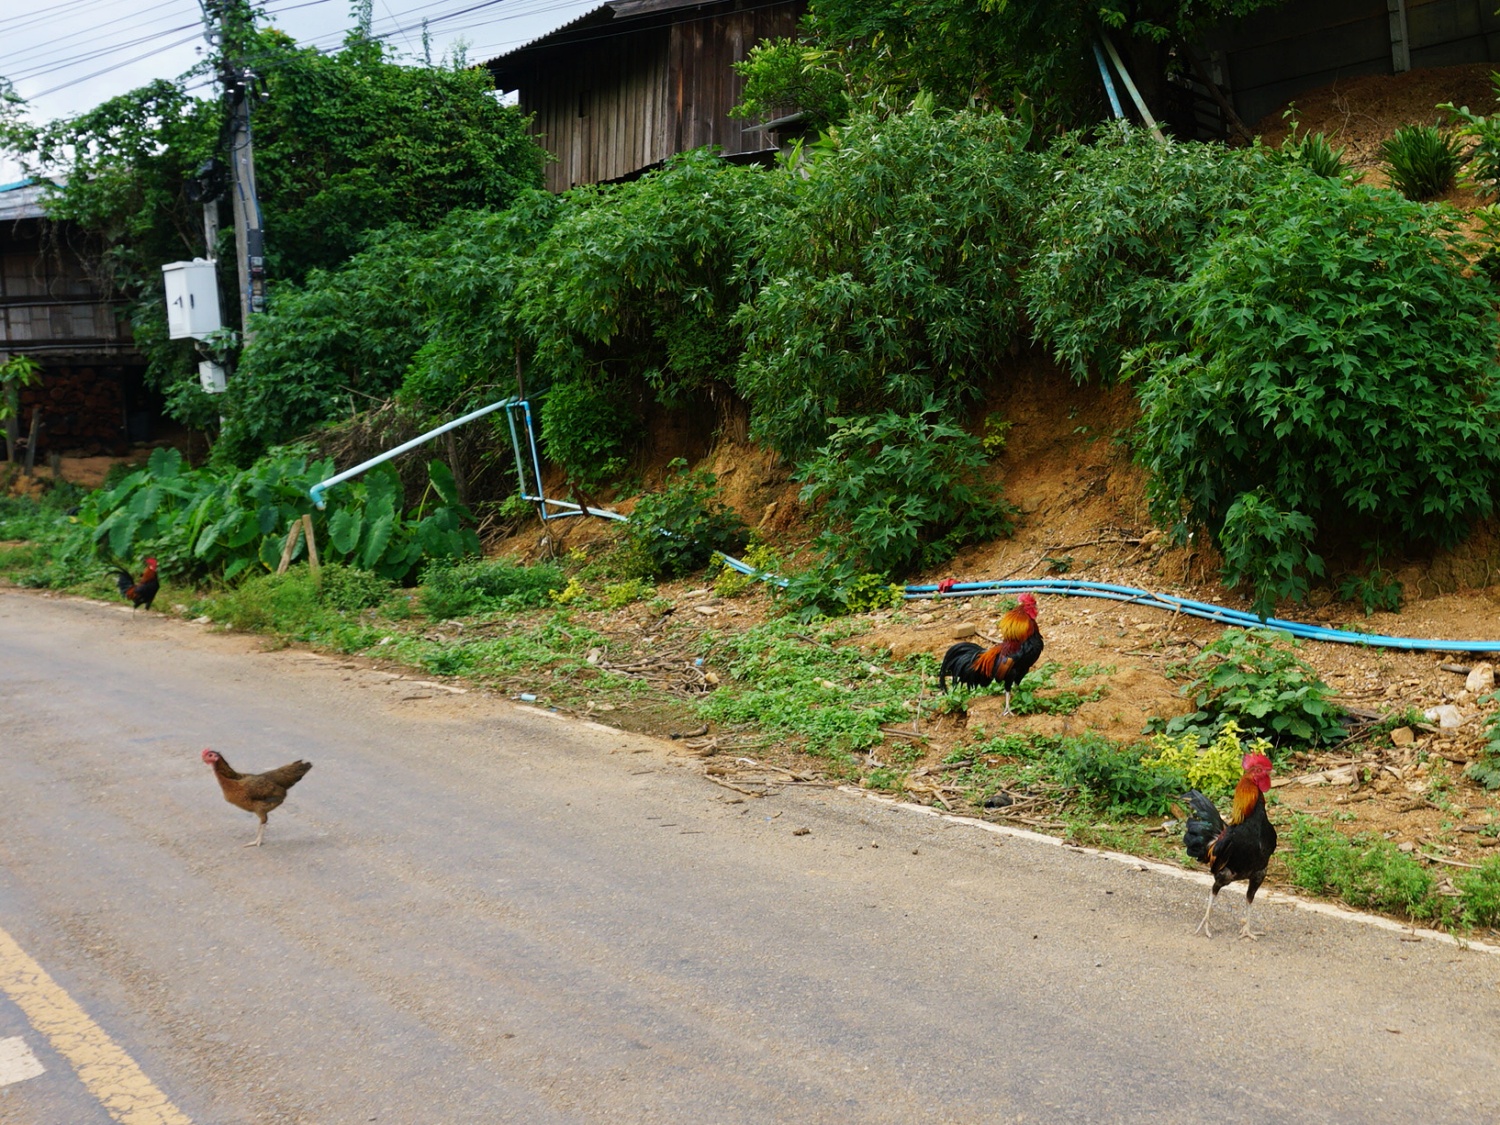 Northern Thailand village